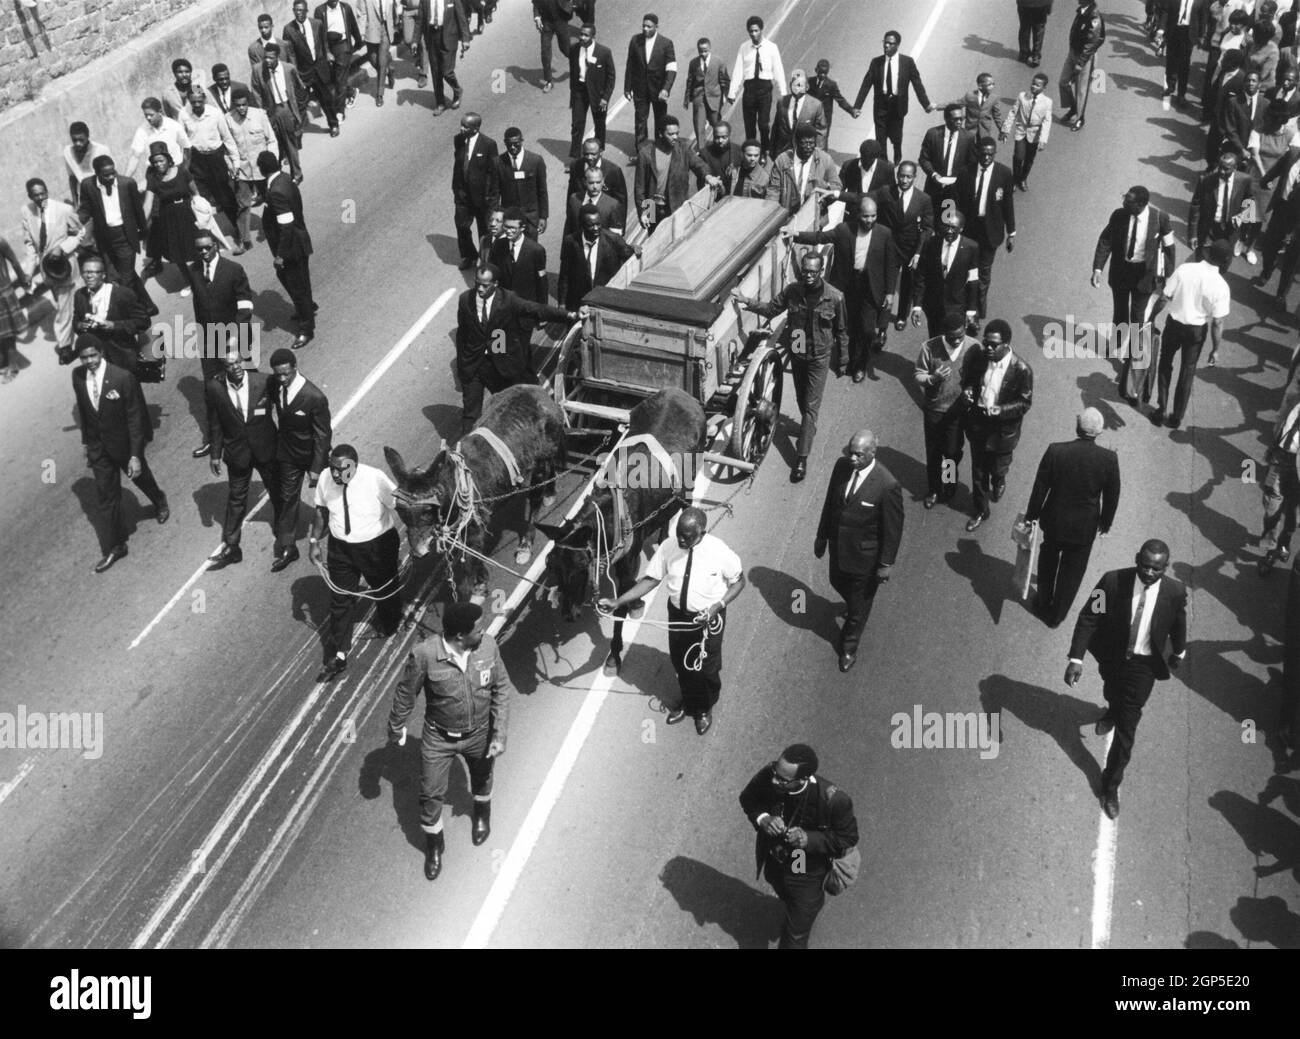 Beerdigung von Martin Luther King in Atlanta, Georgia, 9. April 1968. Auf die von Maulkörben gezeichnete Schatulle folgten Tausende, die den gewaltsamen Tod des prominentesten Führers der Bürgerrechtsbewegung der Jahre 1950 bis 1960er betrauerten (BSLOC 2021 3 11) Stockfoto